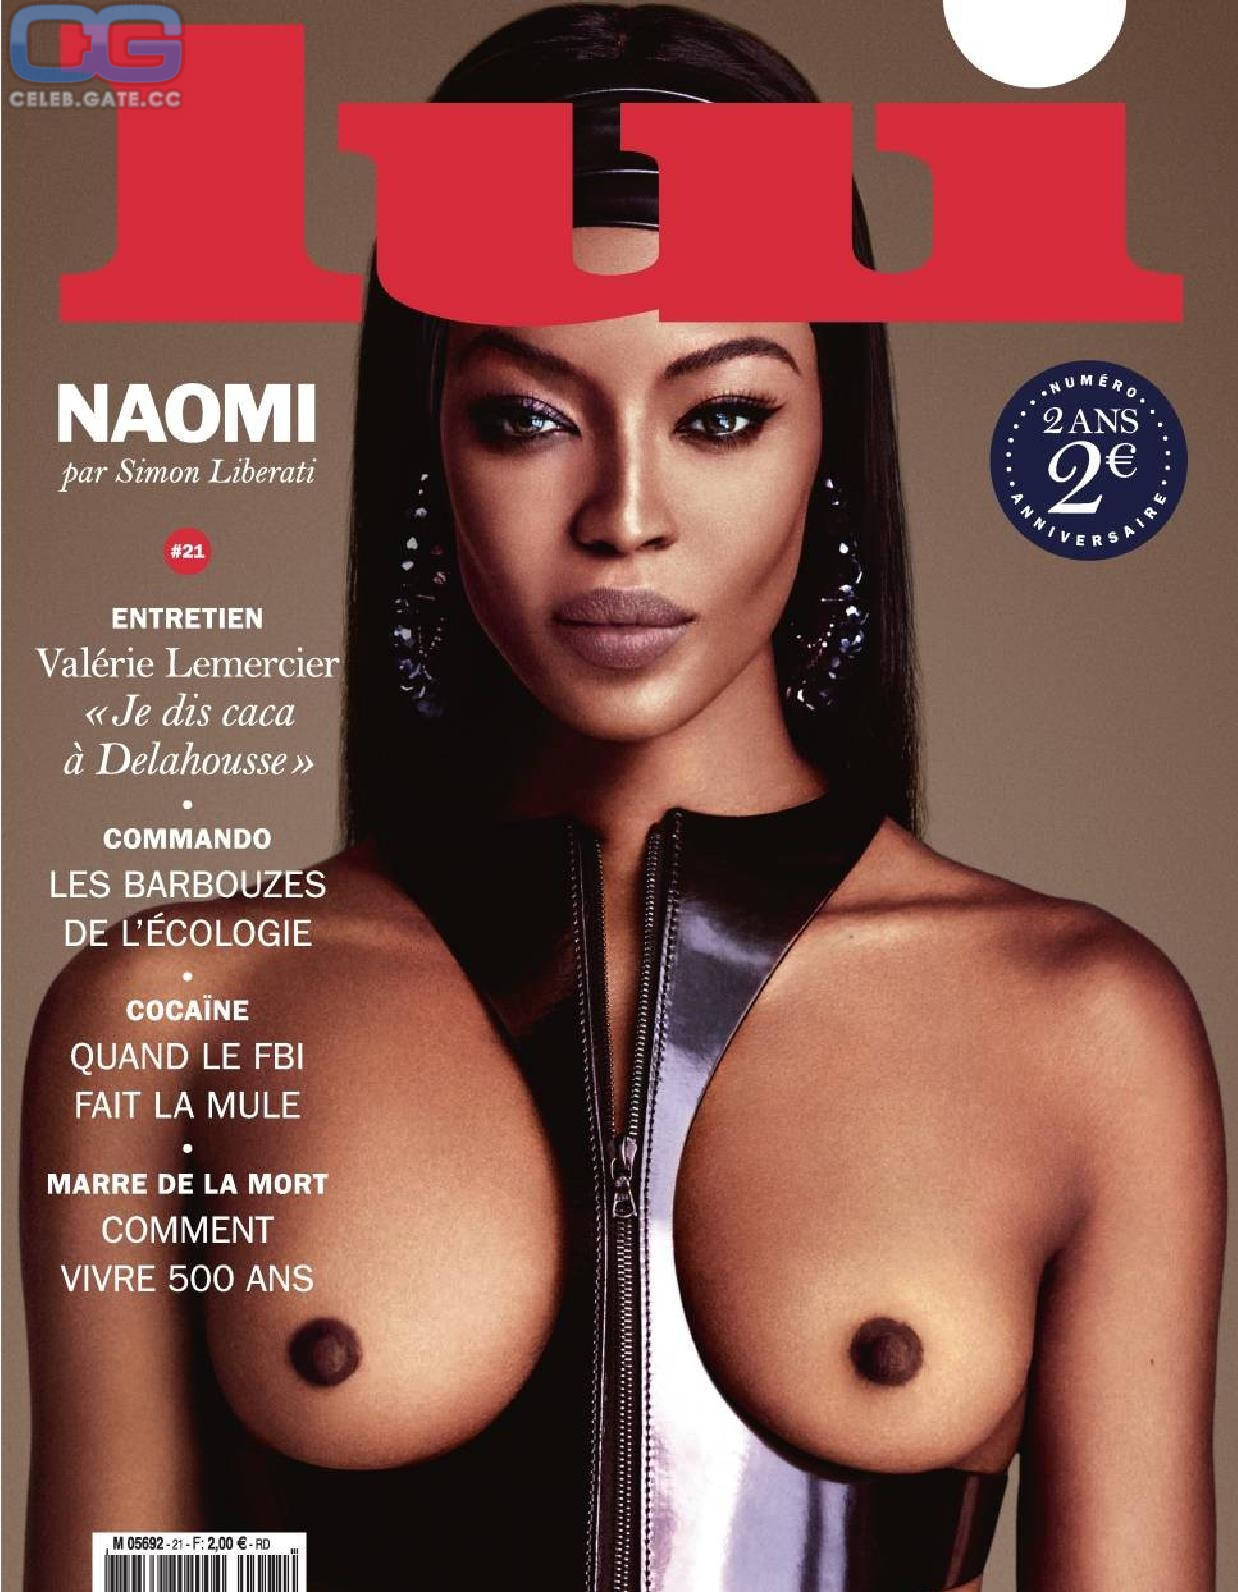 Naomi Campbell  nackt